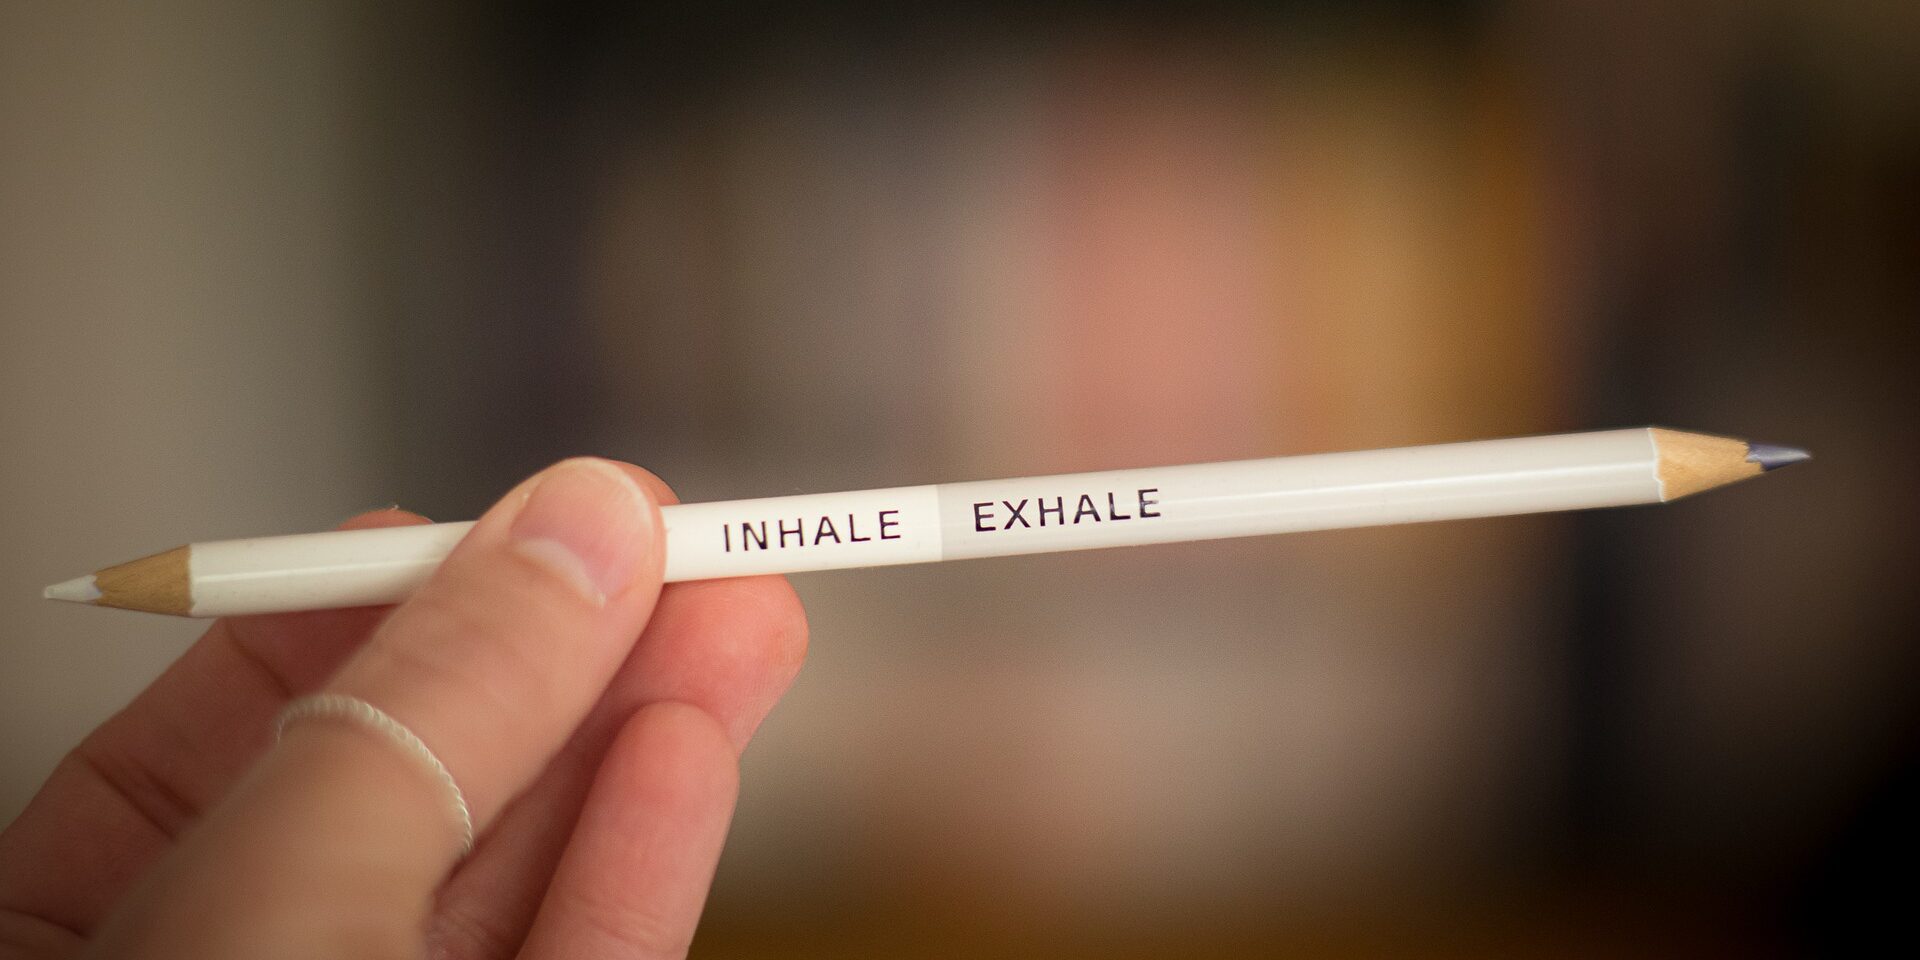 Pencil "inhale exhale"